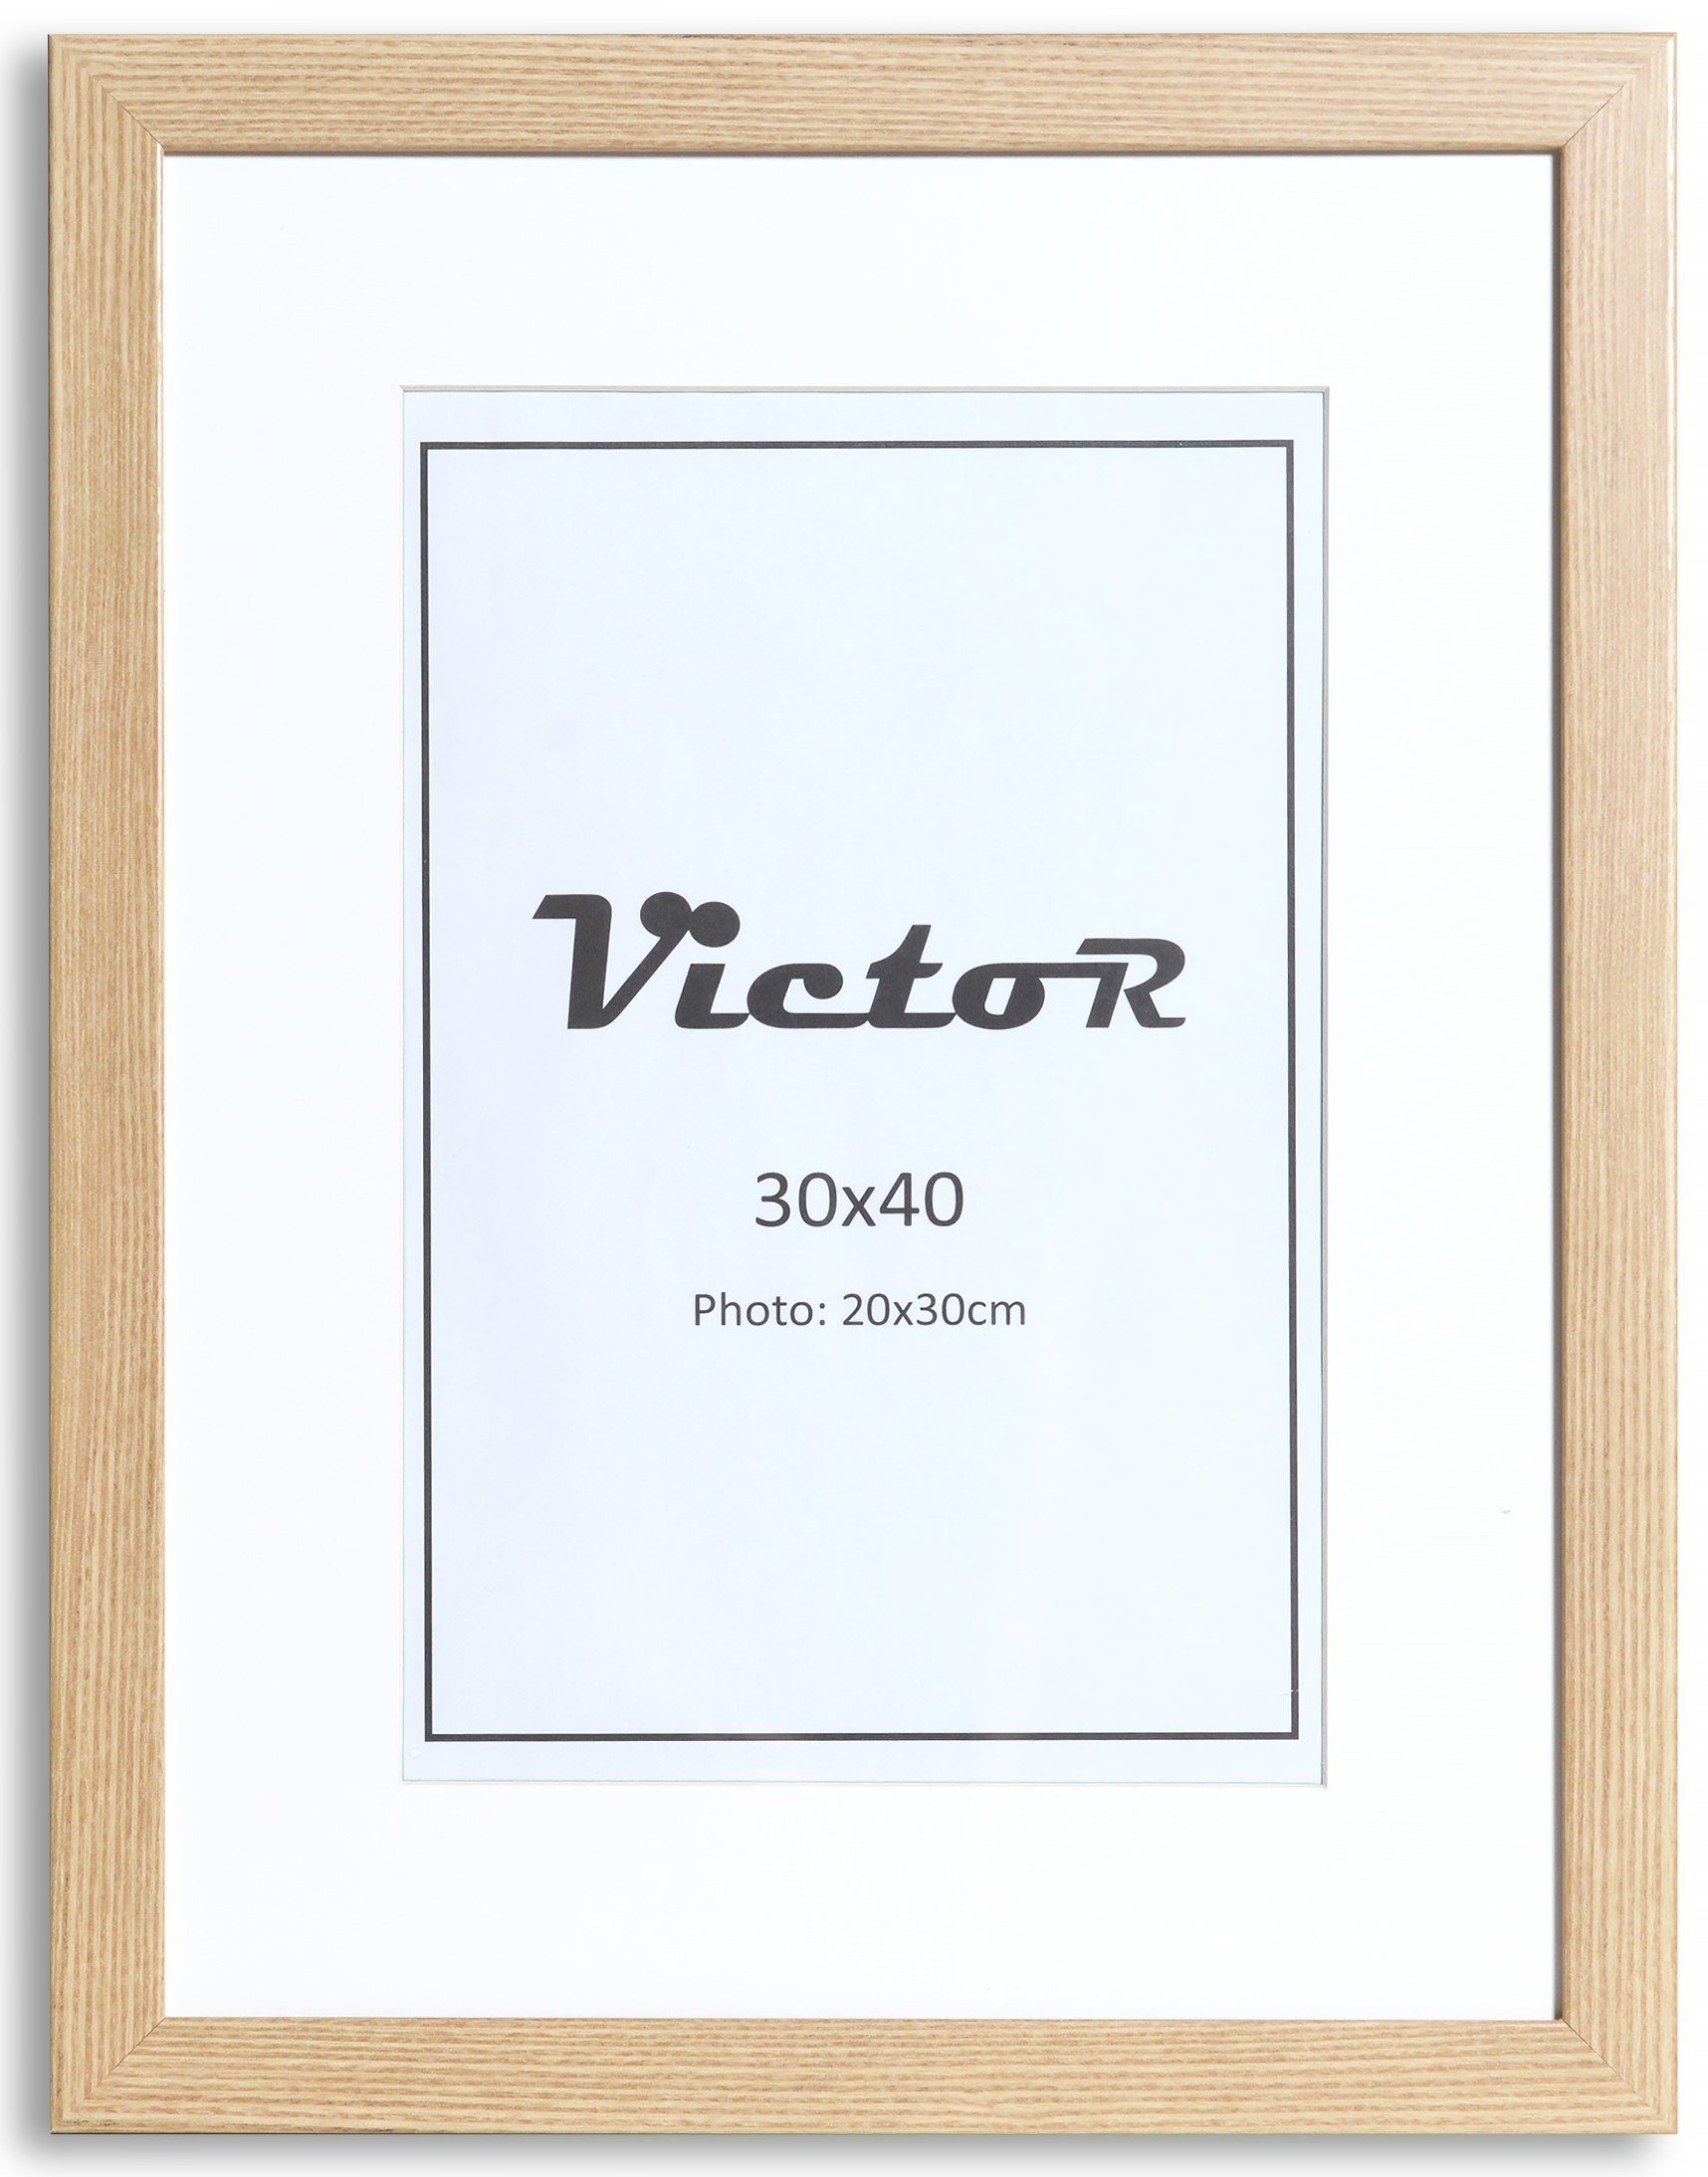 Victor (Zenith) Bilderrahmen Bilderrahmen \"Richter\" - Farbe: Beige - Größe: 30 x 40 cm, Bilderrahmen Beige 30x40 cm mit 20x30 cm Passepartout, Holz